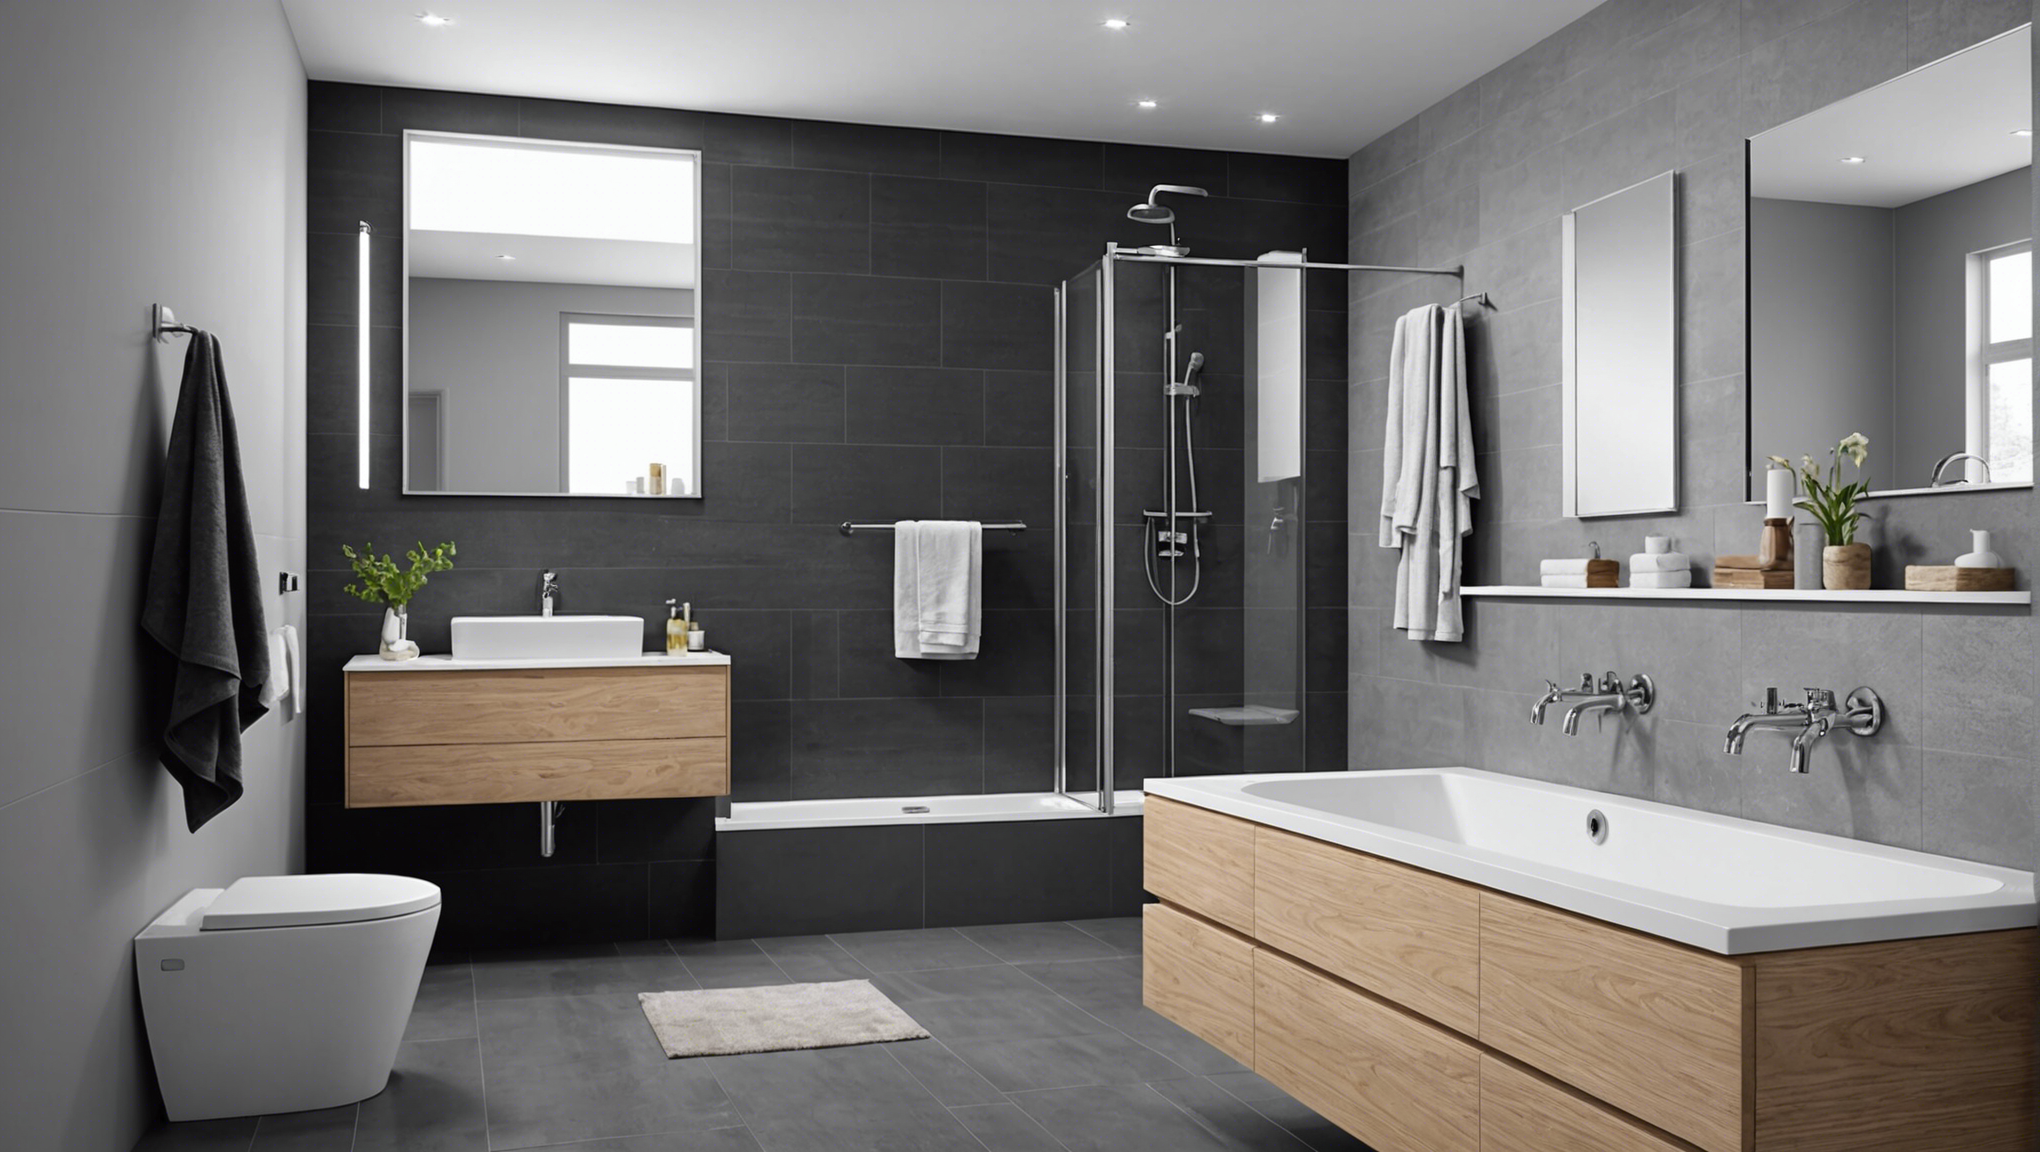 découvrez comment choisir le revêtement de sol idéal pour une salle de bain moderne et pratique. conseils et astuces pour une décoration tendance et fonctionnelle.